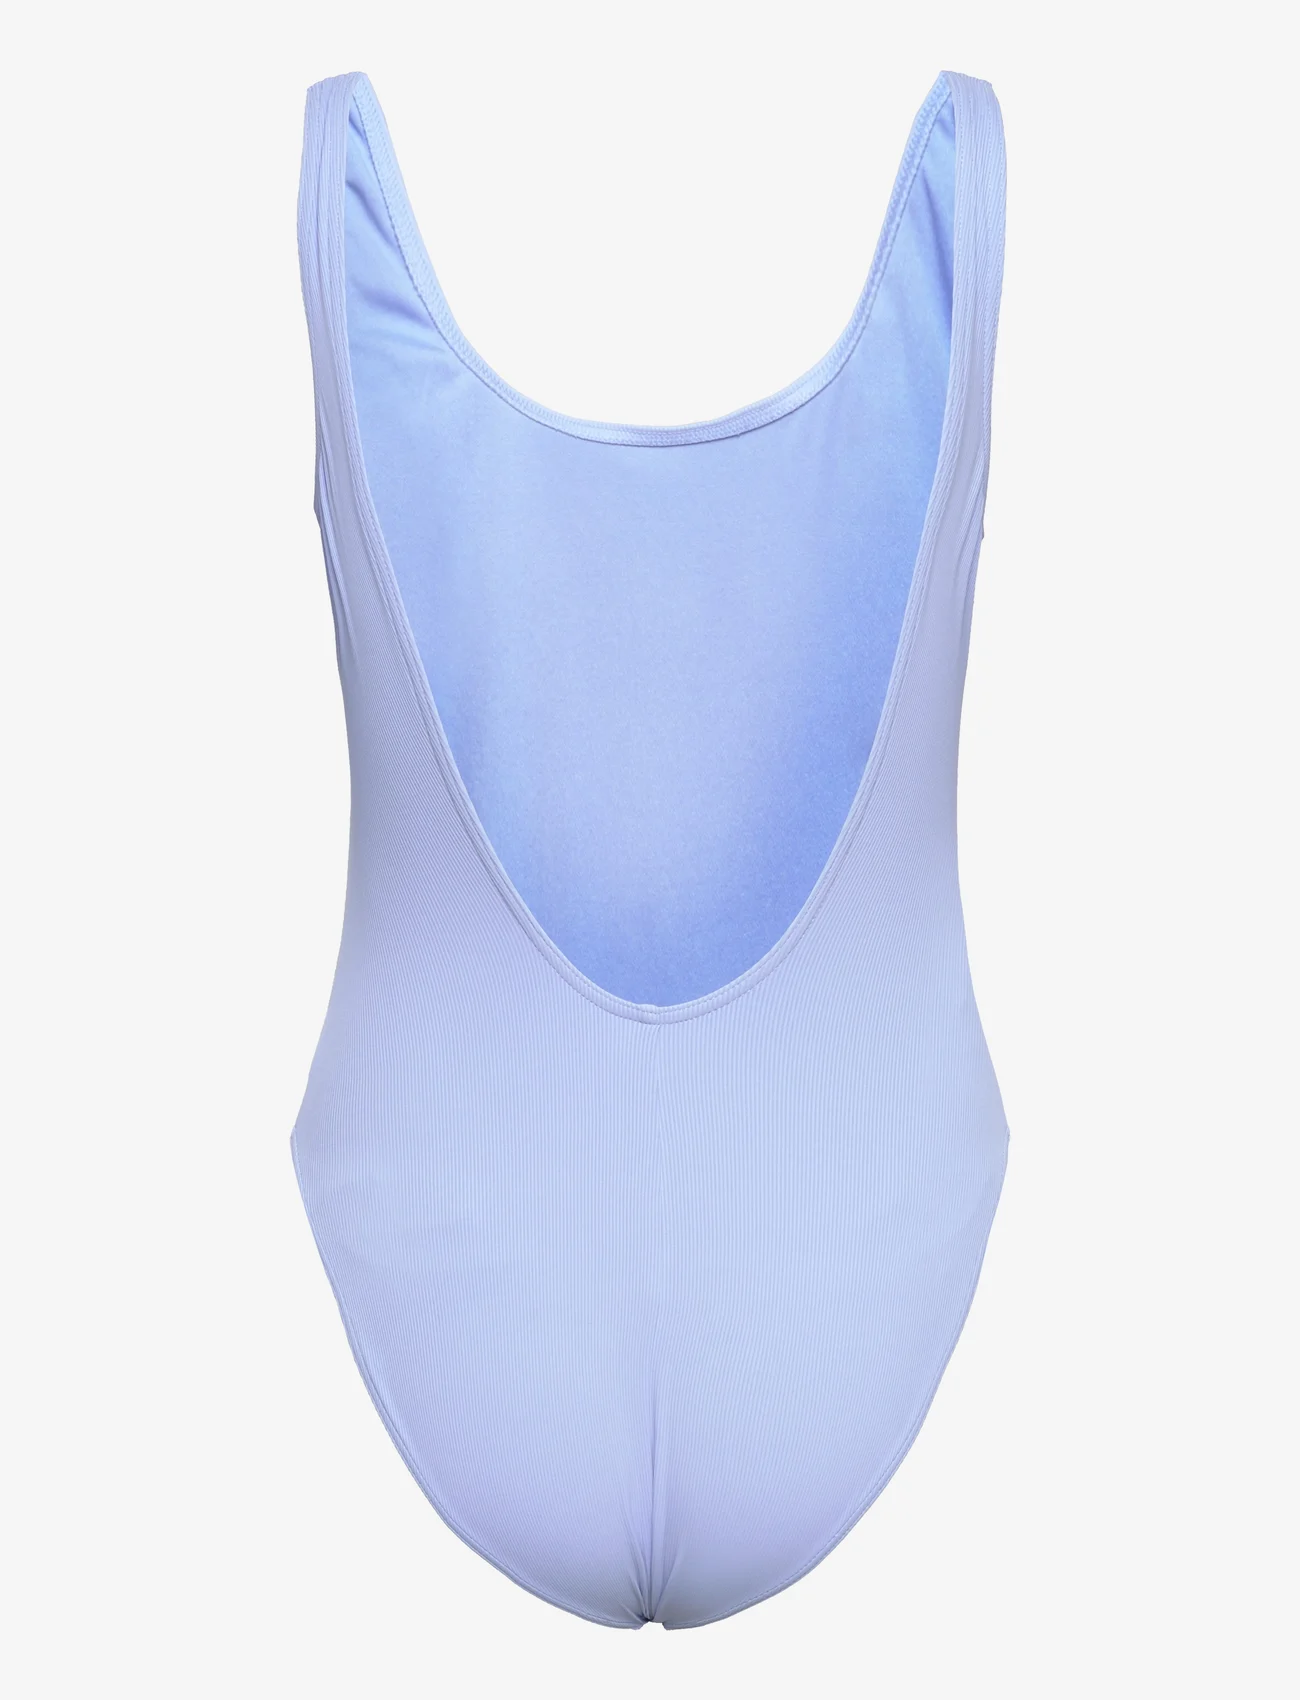 Speedo - Womens Textured Deep U-Back - swimsuits - blue - 1